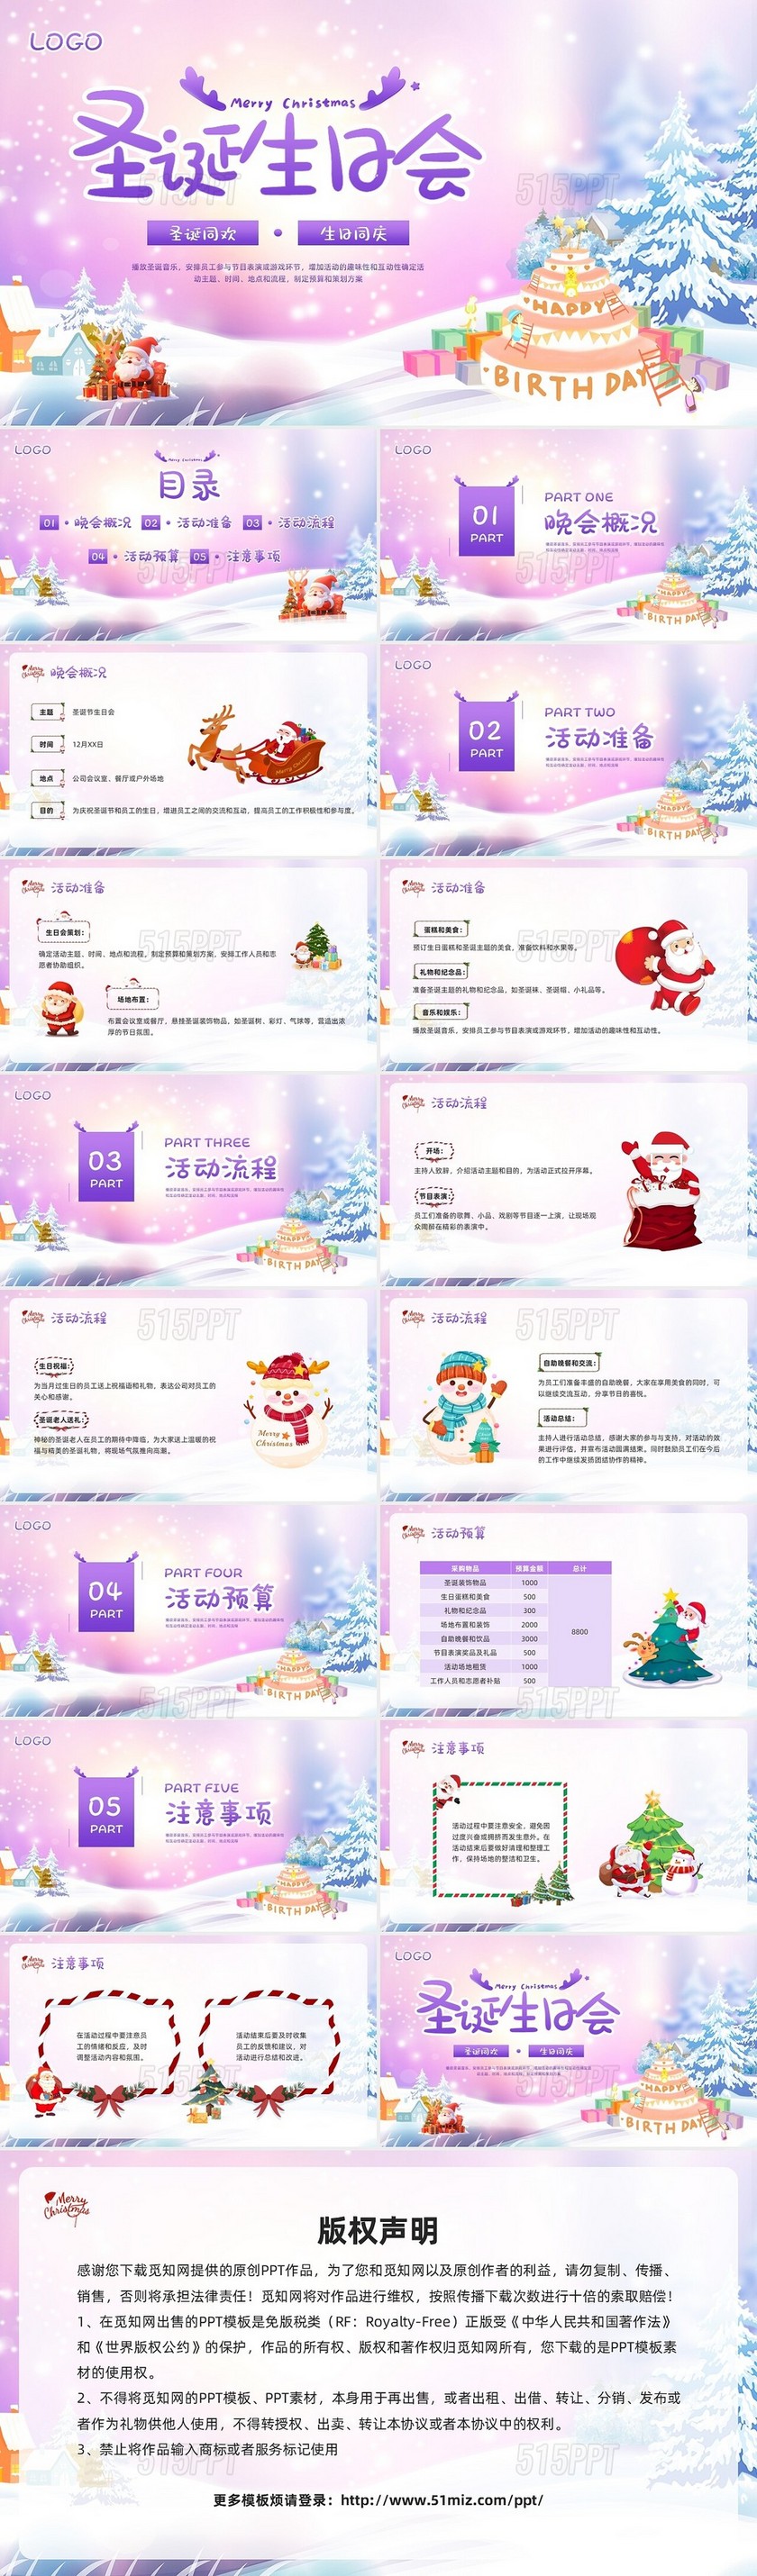 紫色插画圣诞节生日会PPT模板宣传PPT动态PPT